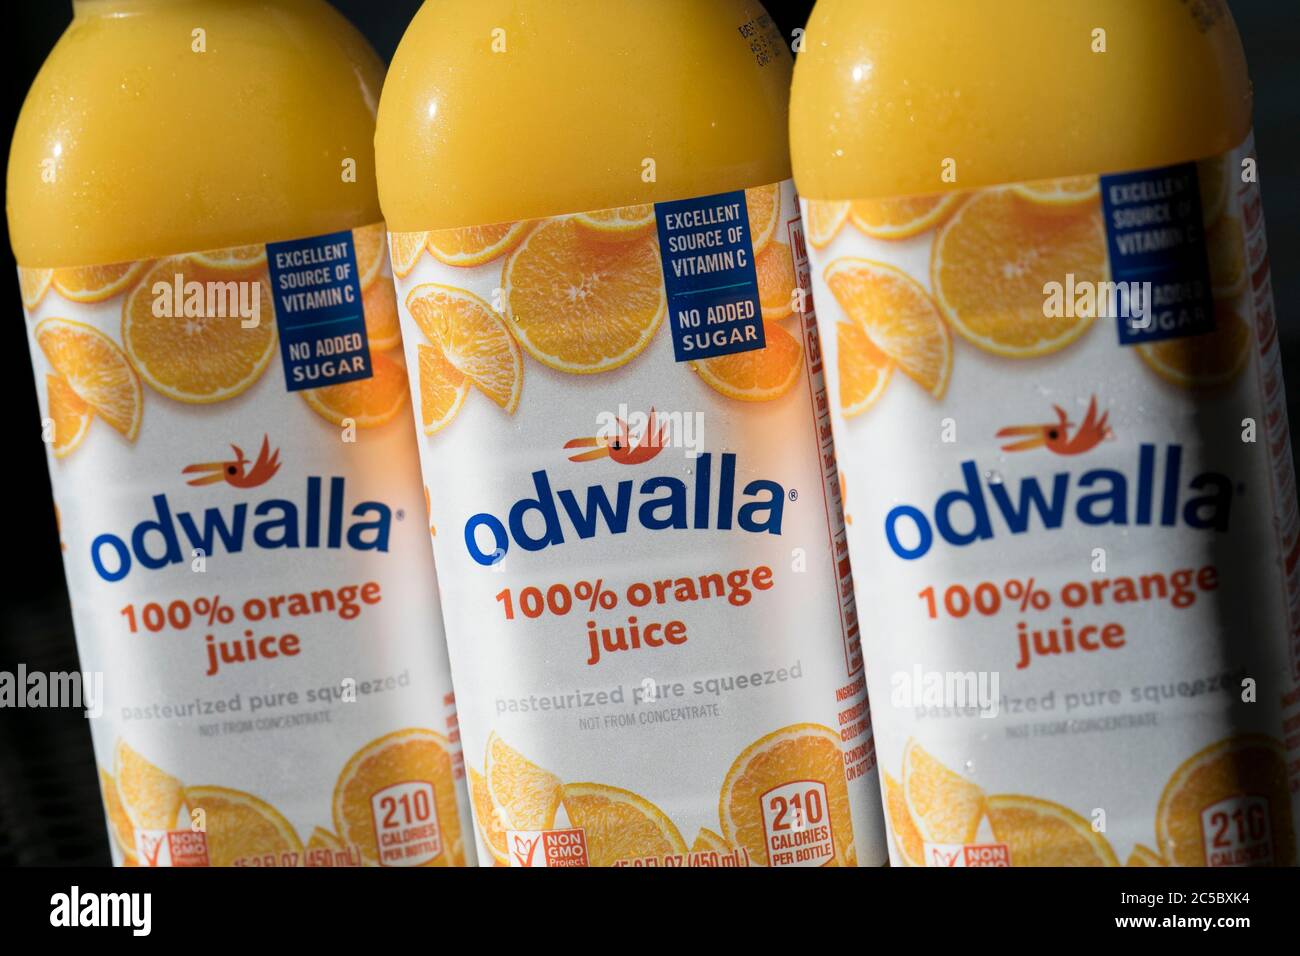 Botellas de productos de jugo Odwalla dispuestas para una foto. Foto de stock